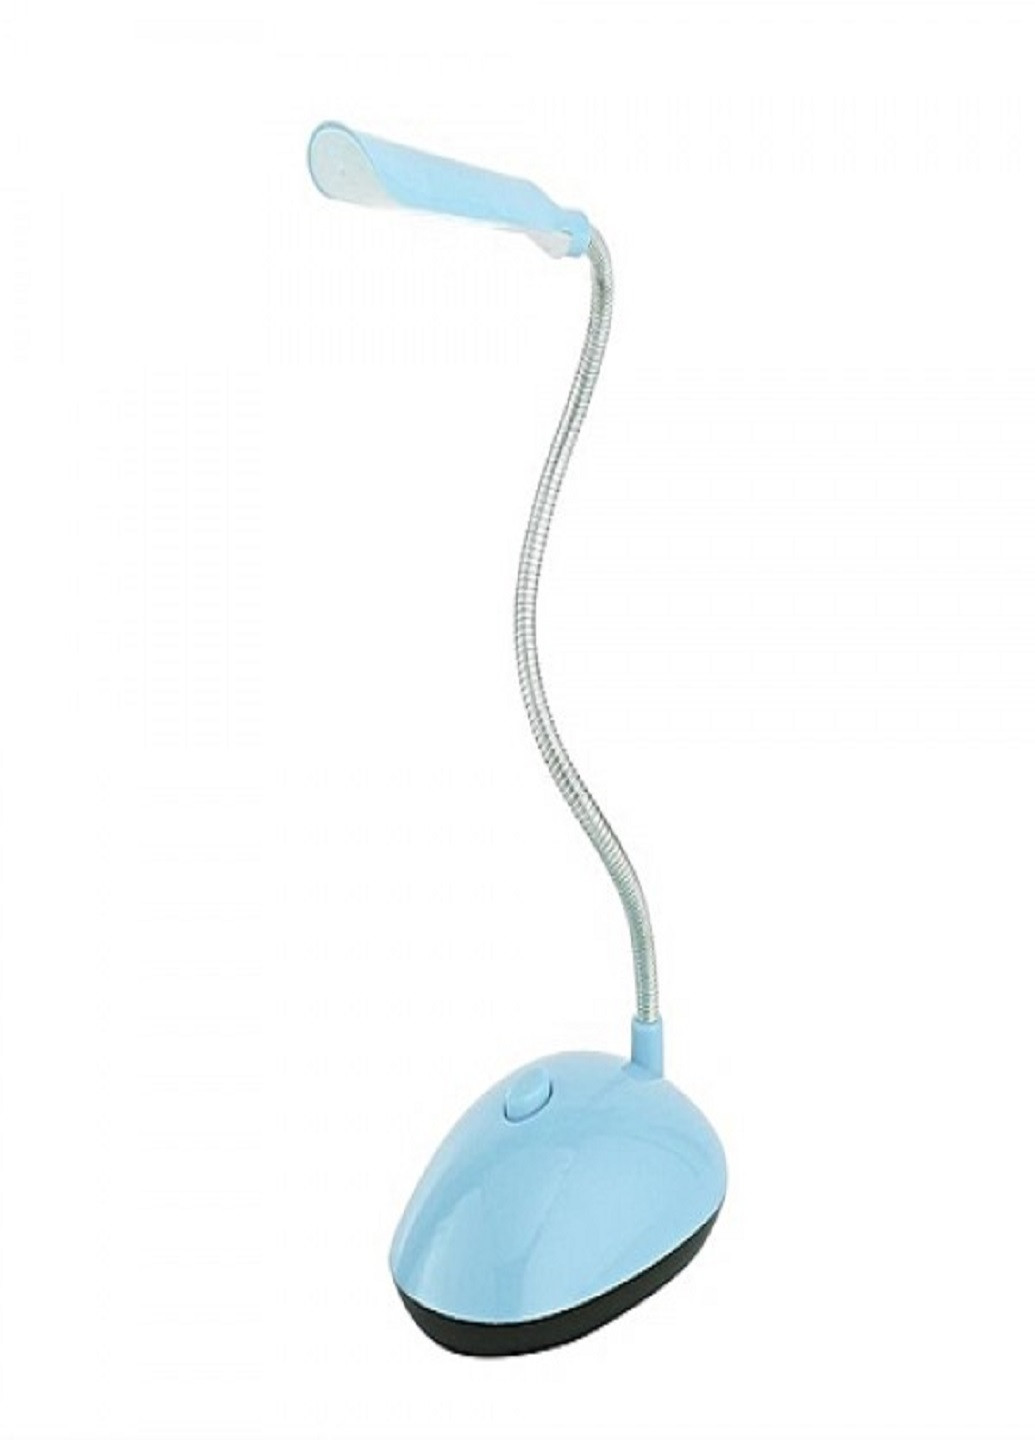 Настільна лампа BL-7188 світильник LED Голуба VTech (253319211)